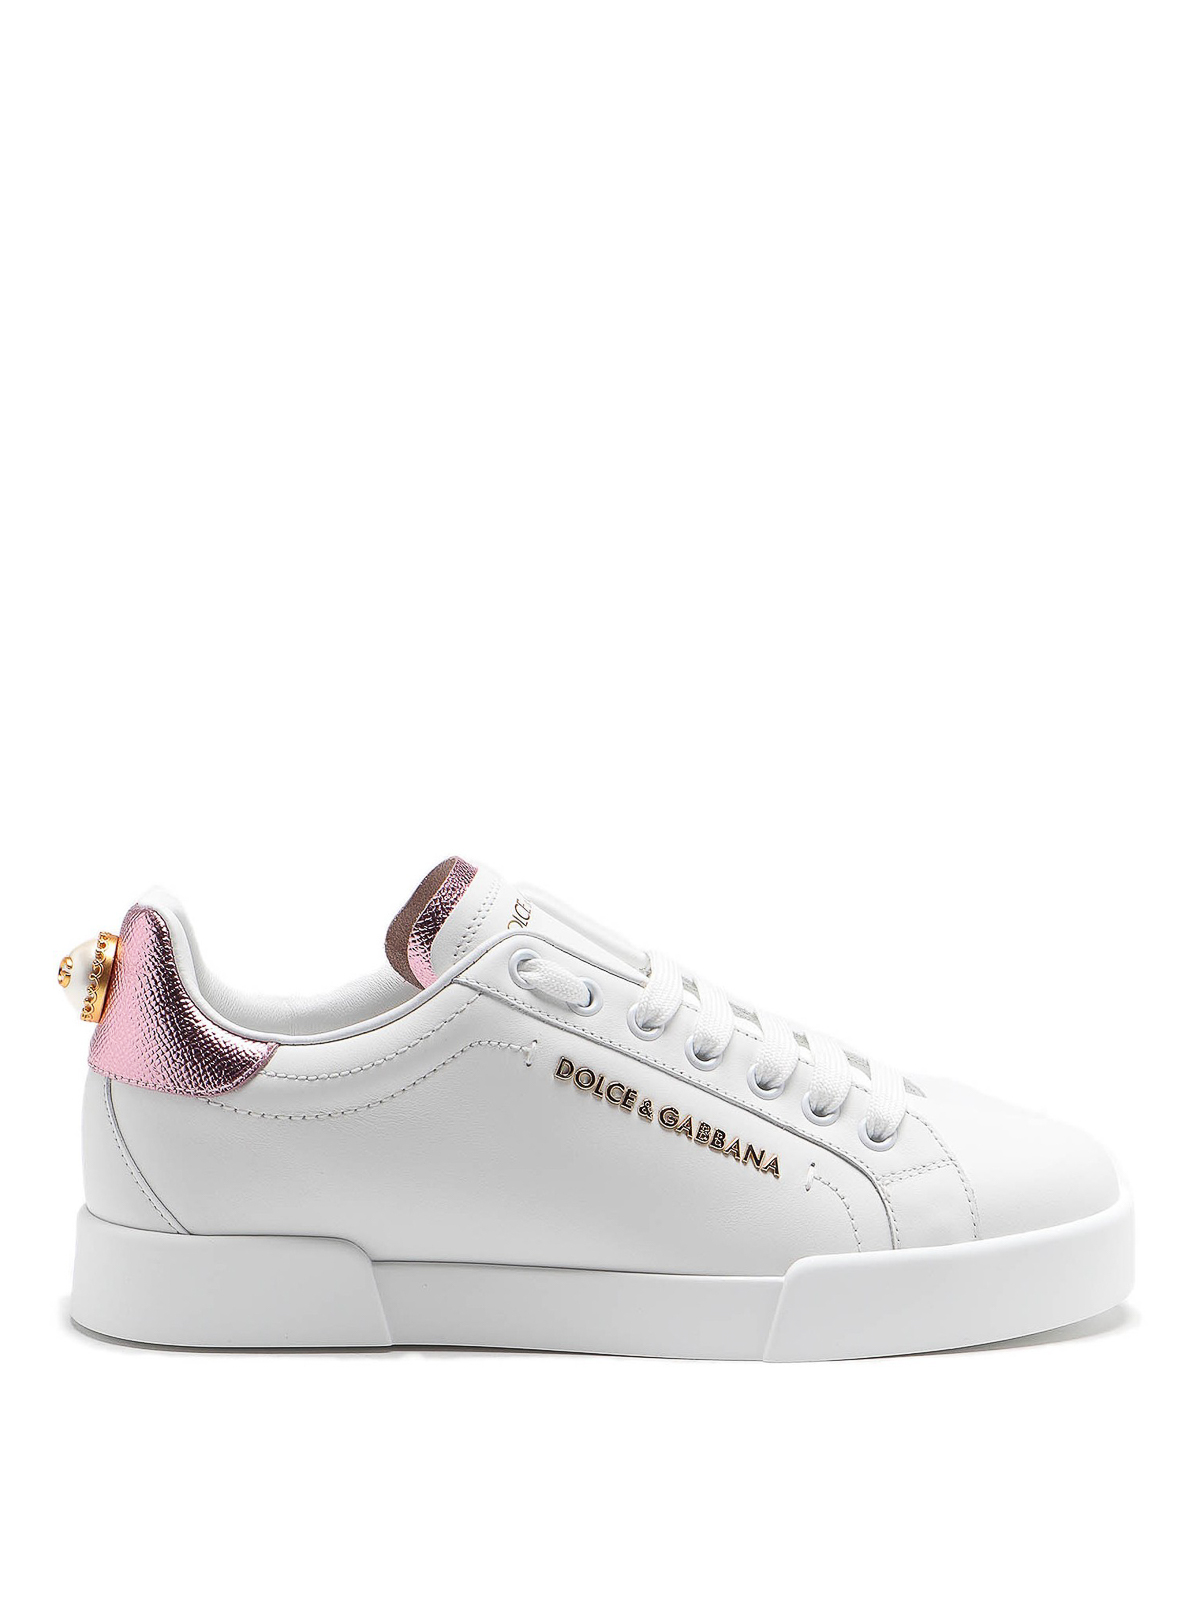 Dolce & Gabbana Portofino Maxi Pearl White Leather Sneakers In Blanco